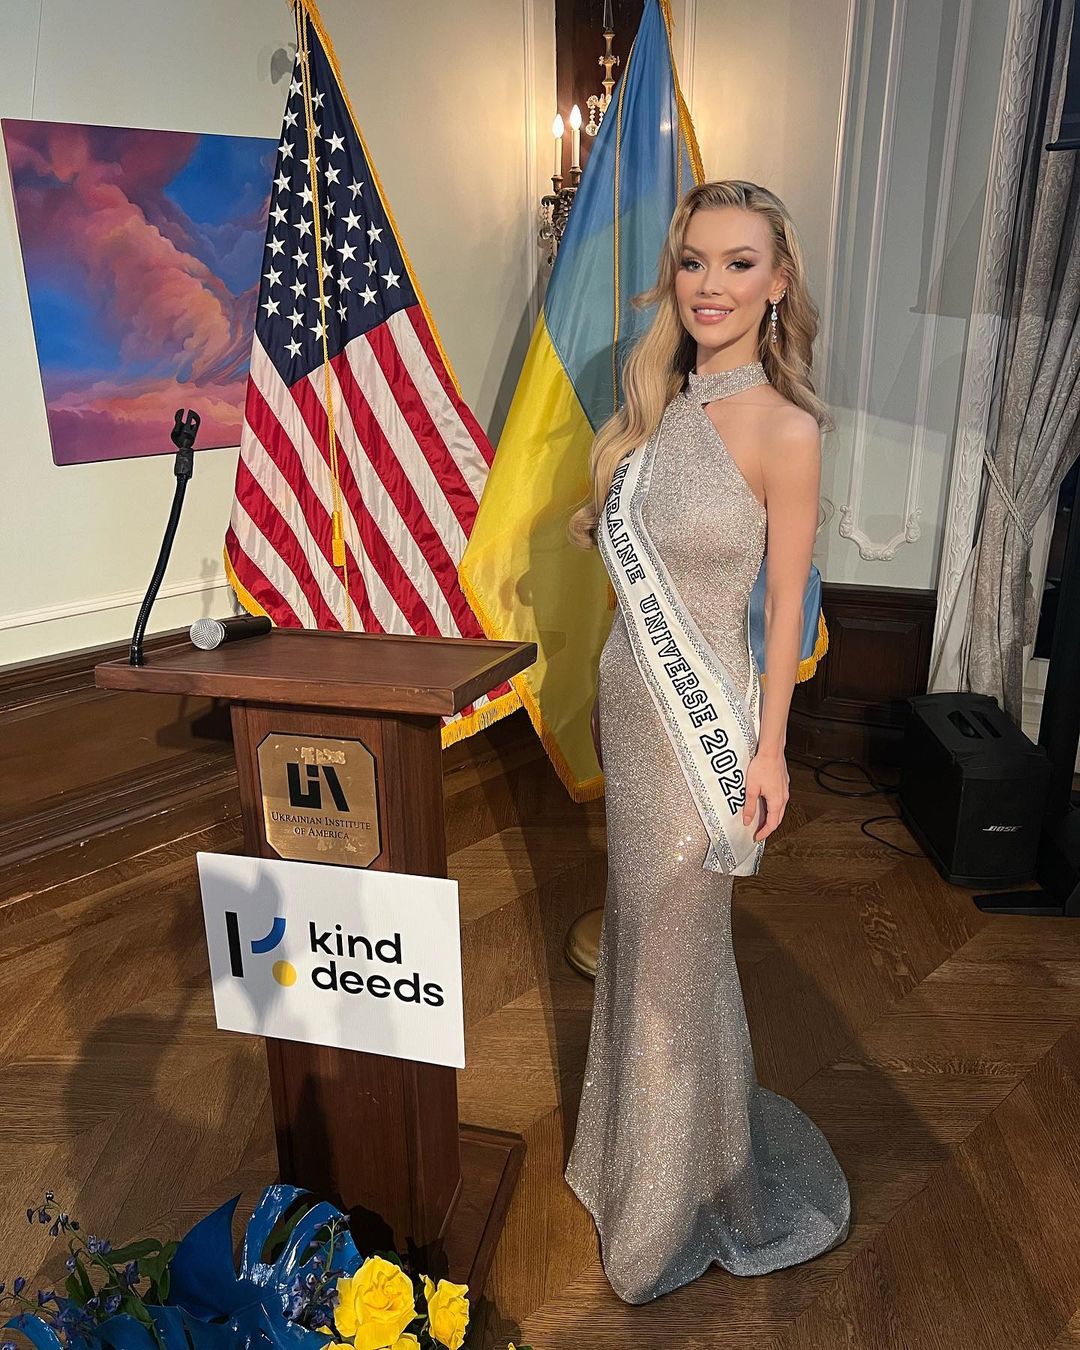 “Мисс Украина Вселенная“ Виктория Апанасенко выходит замуж: королева красоты показала кольцо